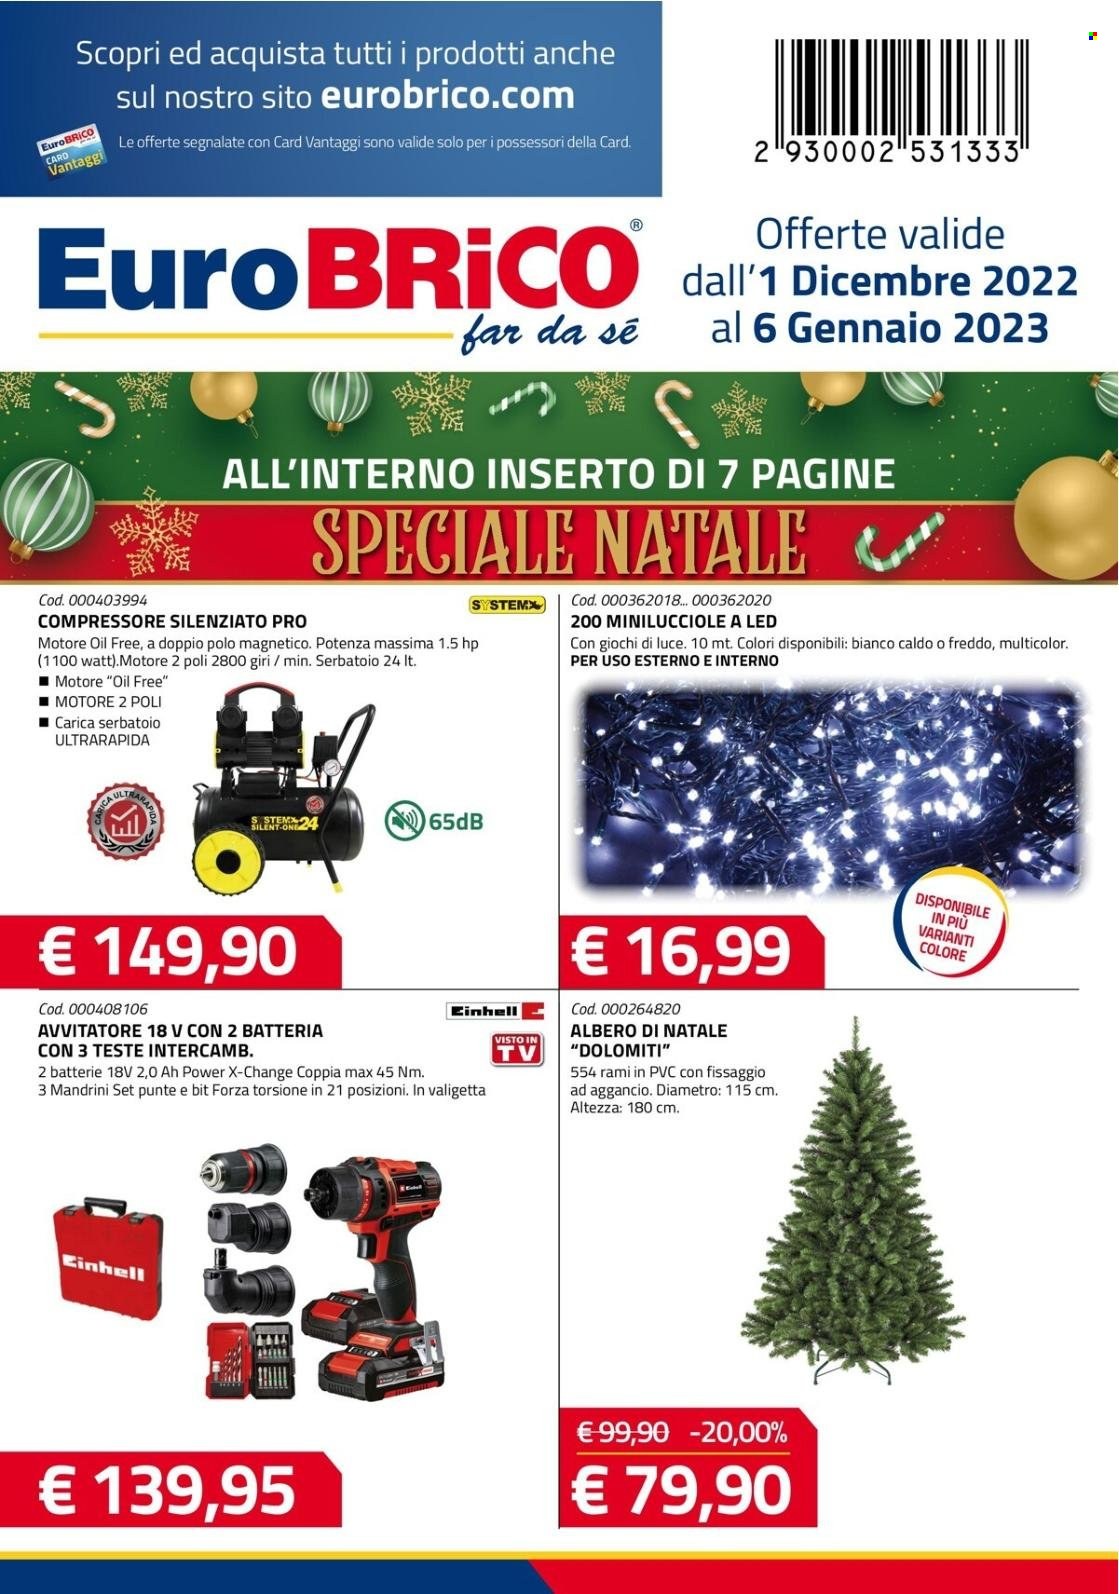 thumbnail - Volantino Eurobrico - 1/12/2022 - 6/1/2023 - Prodotti in offerta - albero di natale, avvitatore, compressore. Pagina 1.